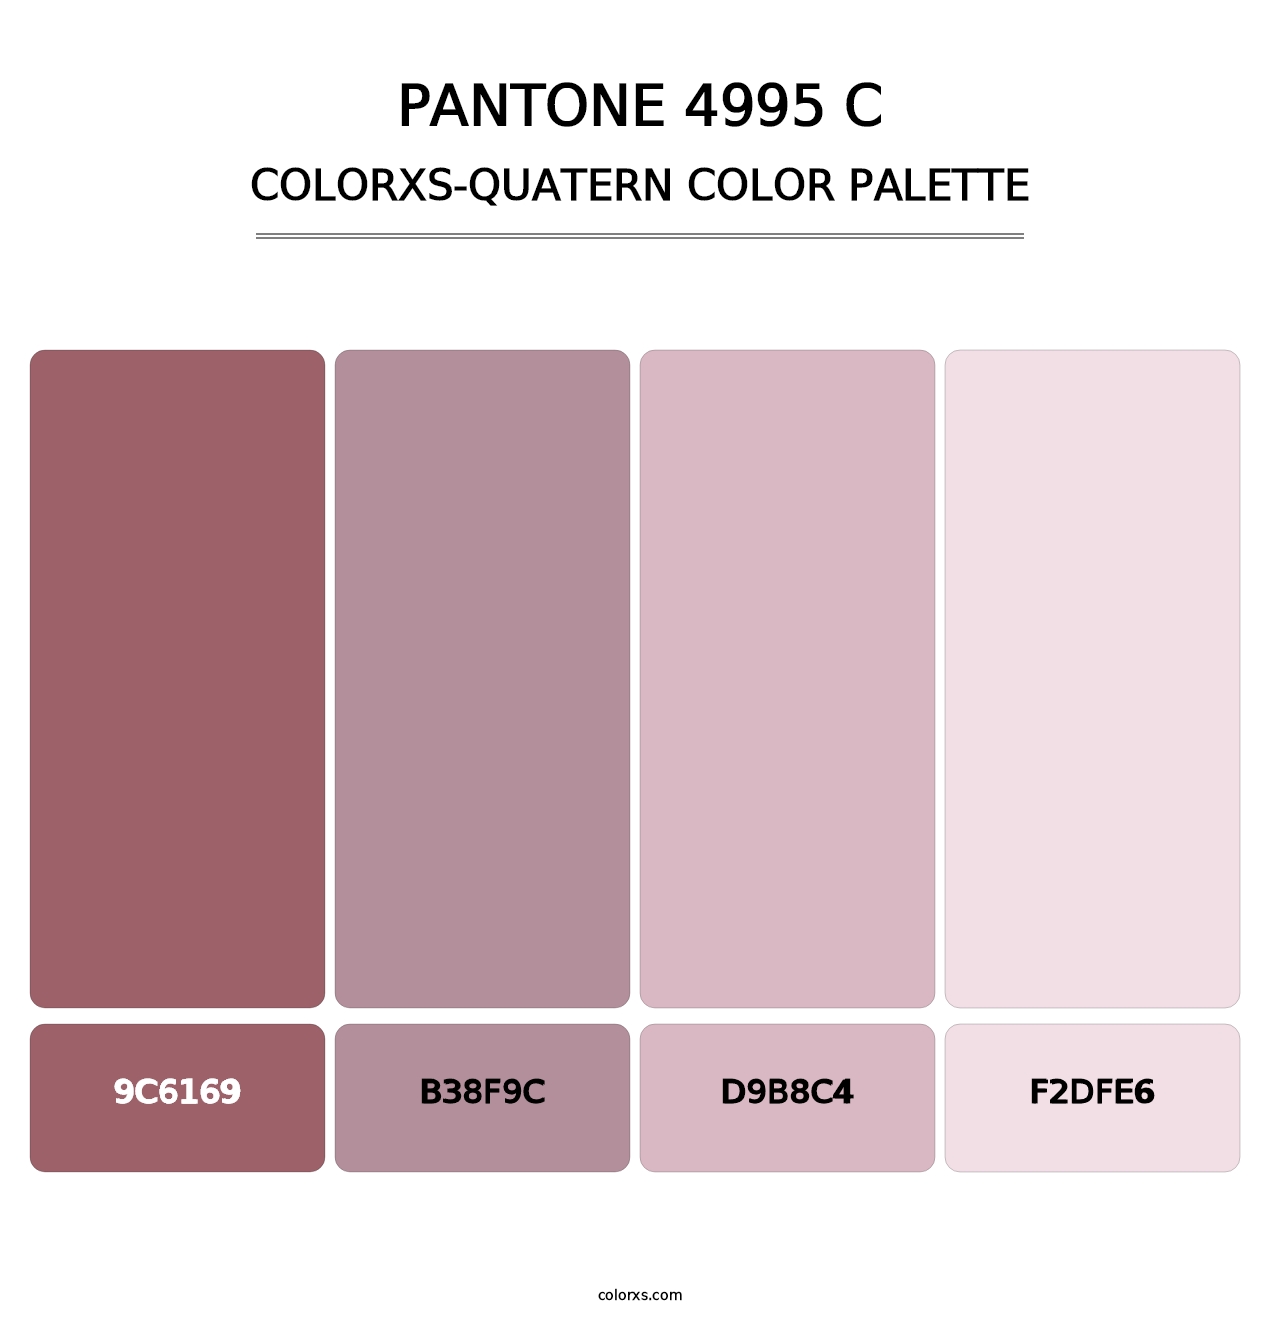 PANTONE 4995 C - Colorxs Quatern Palette